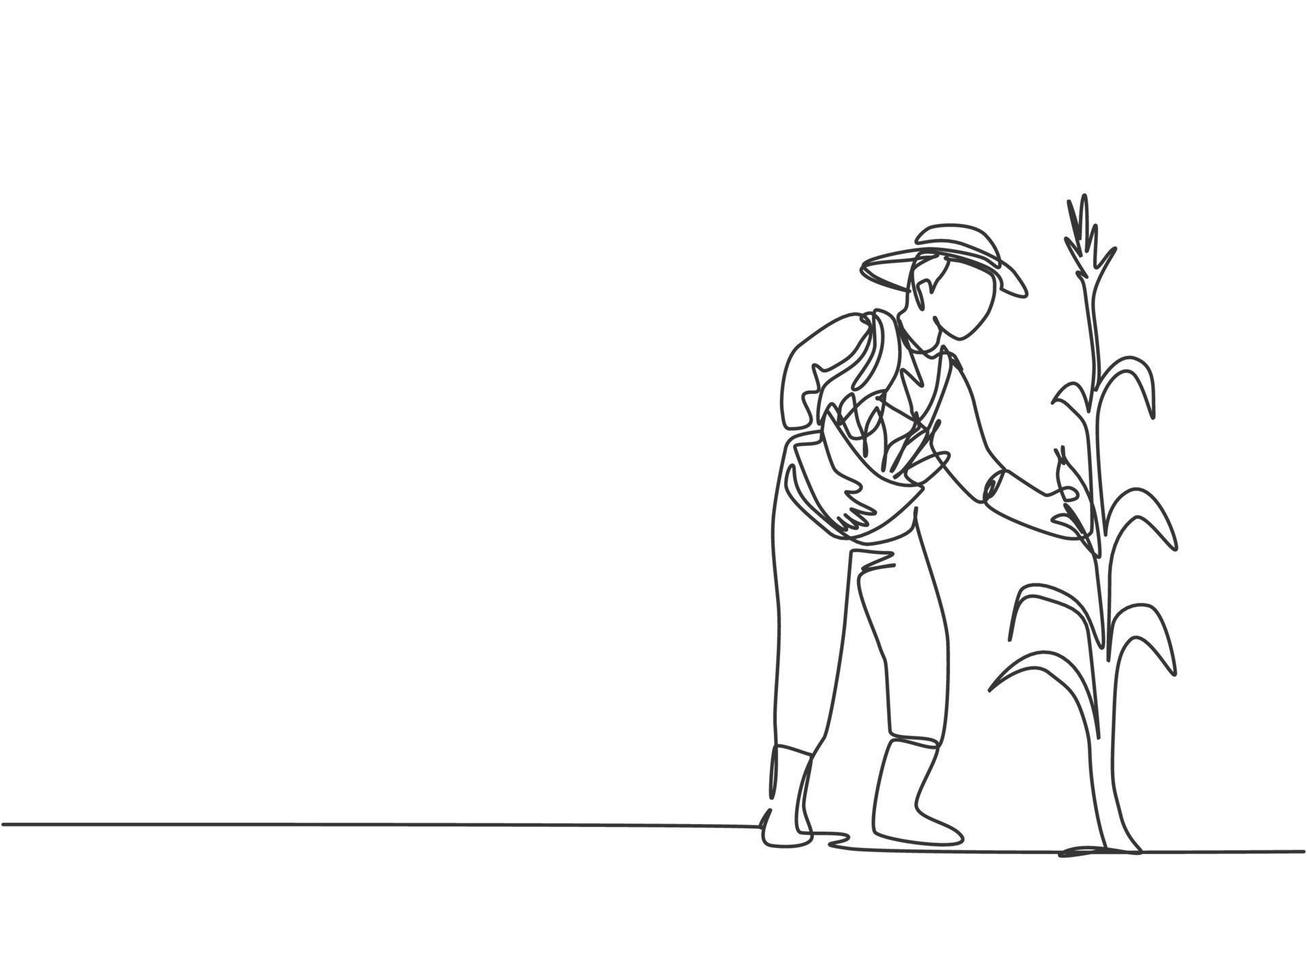 único desenho de linha de um jovem agricultor do sexo masculino colhendo o milho na árvore. agricultor profissional. agricultura desafio conceito minimalista. moderna linha contínua desenhar design gráfico ilustração vetorial. vetor